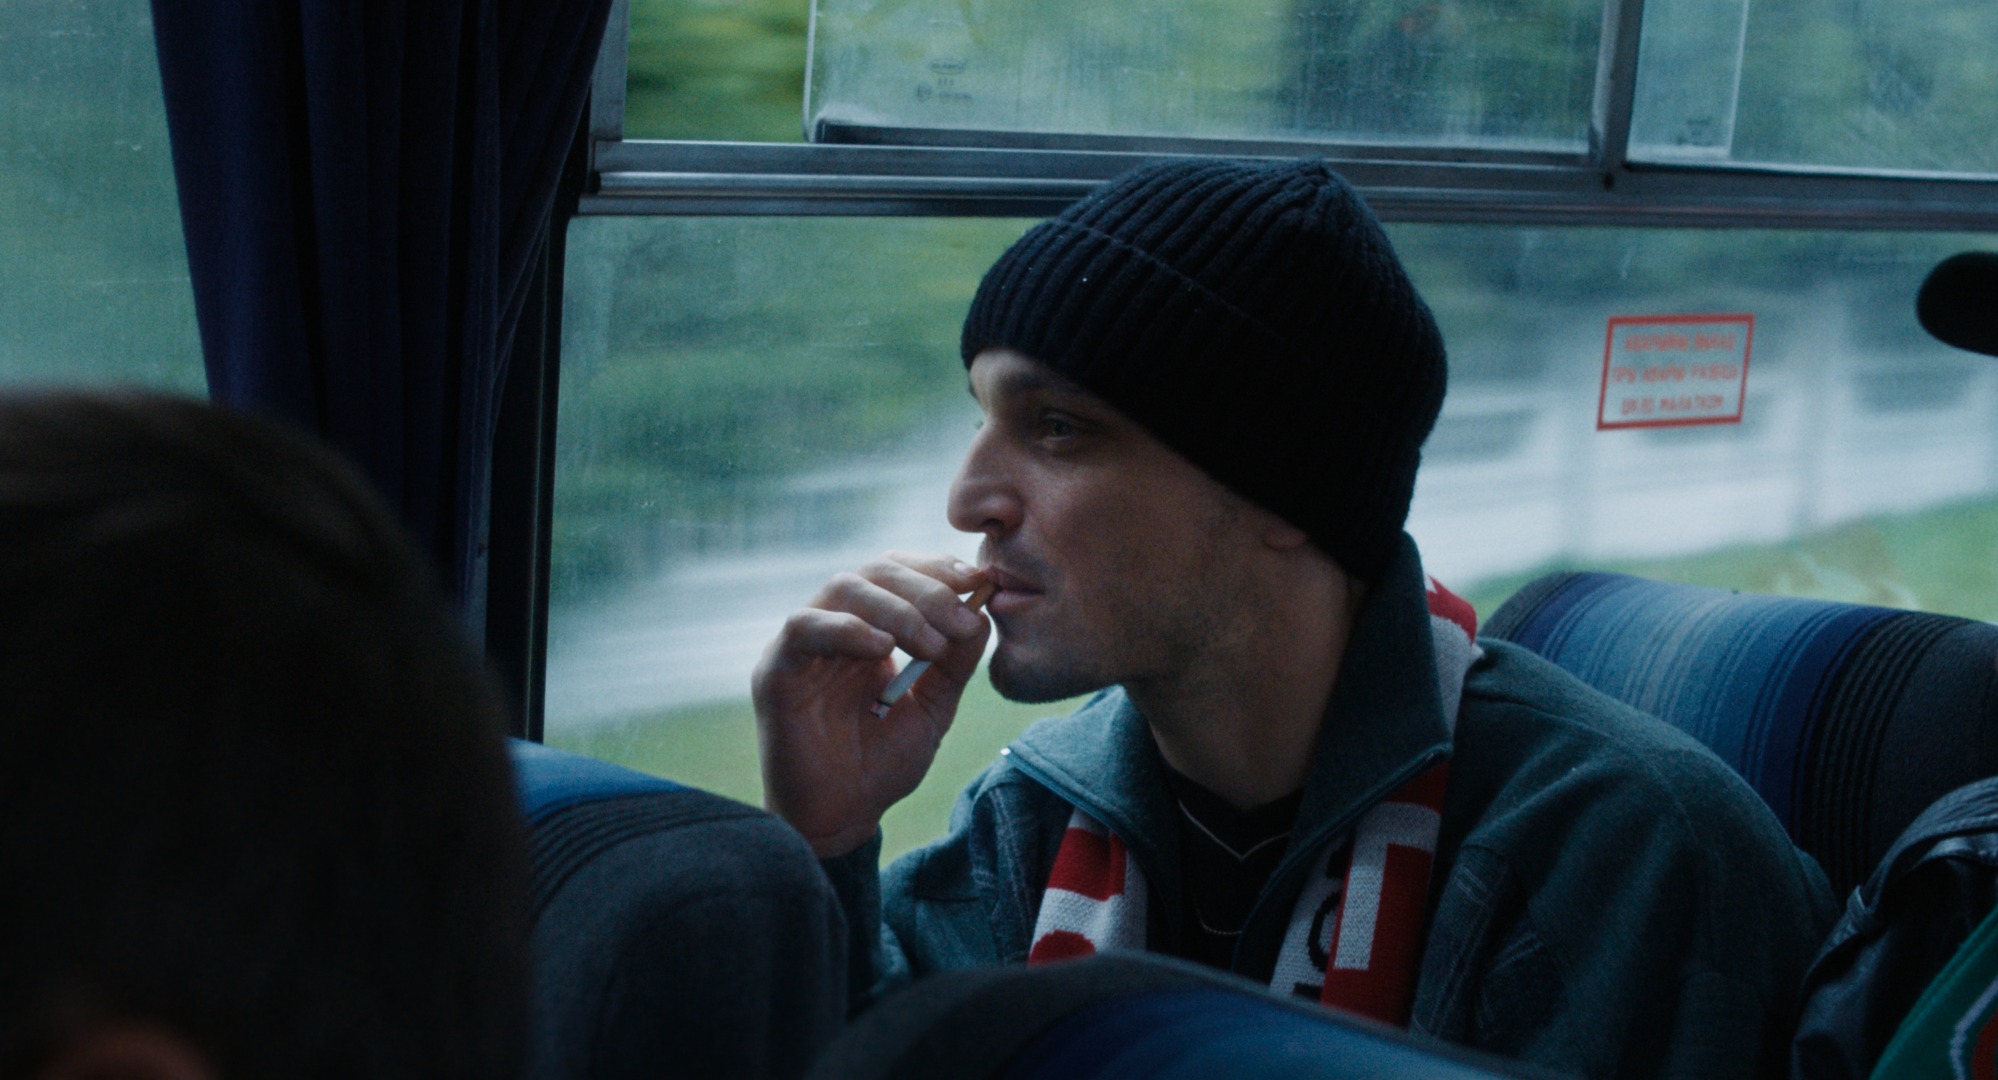 un ragazzo seduto su un pulman con una sigaretta in bocca